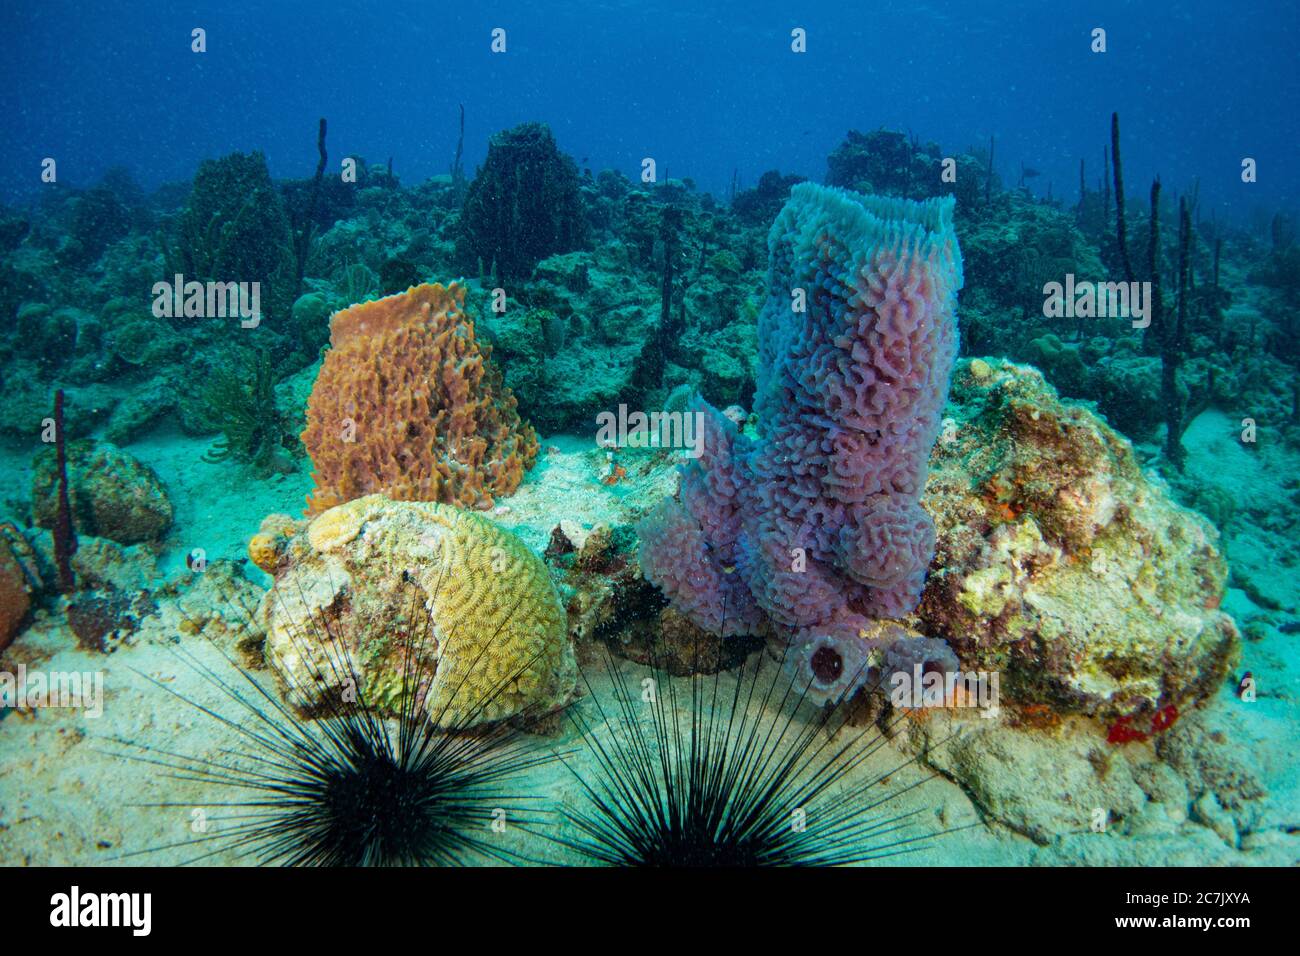 Bunte Korallen, Schwämme und Meeresfans im karibischen Meer mit Sonnenlicht im blauen Ozean Stockfoto